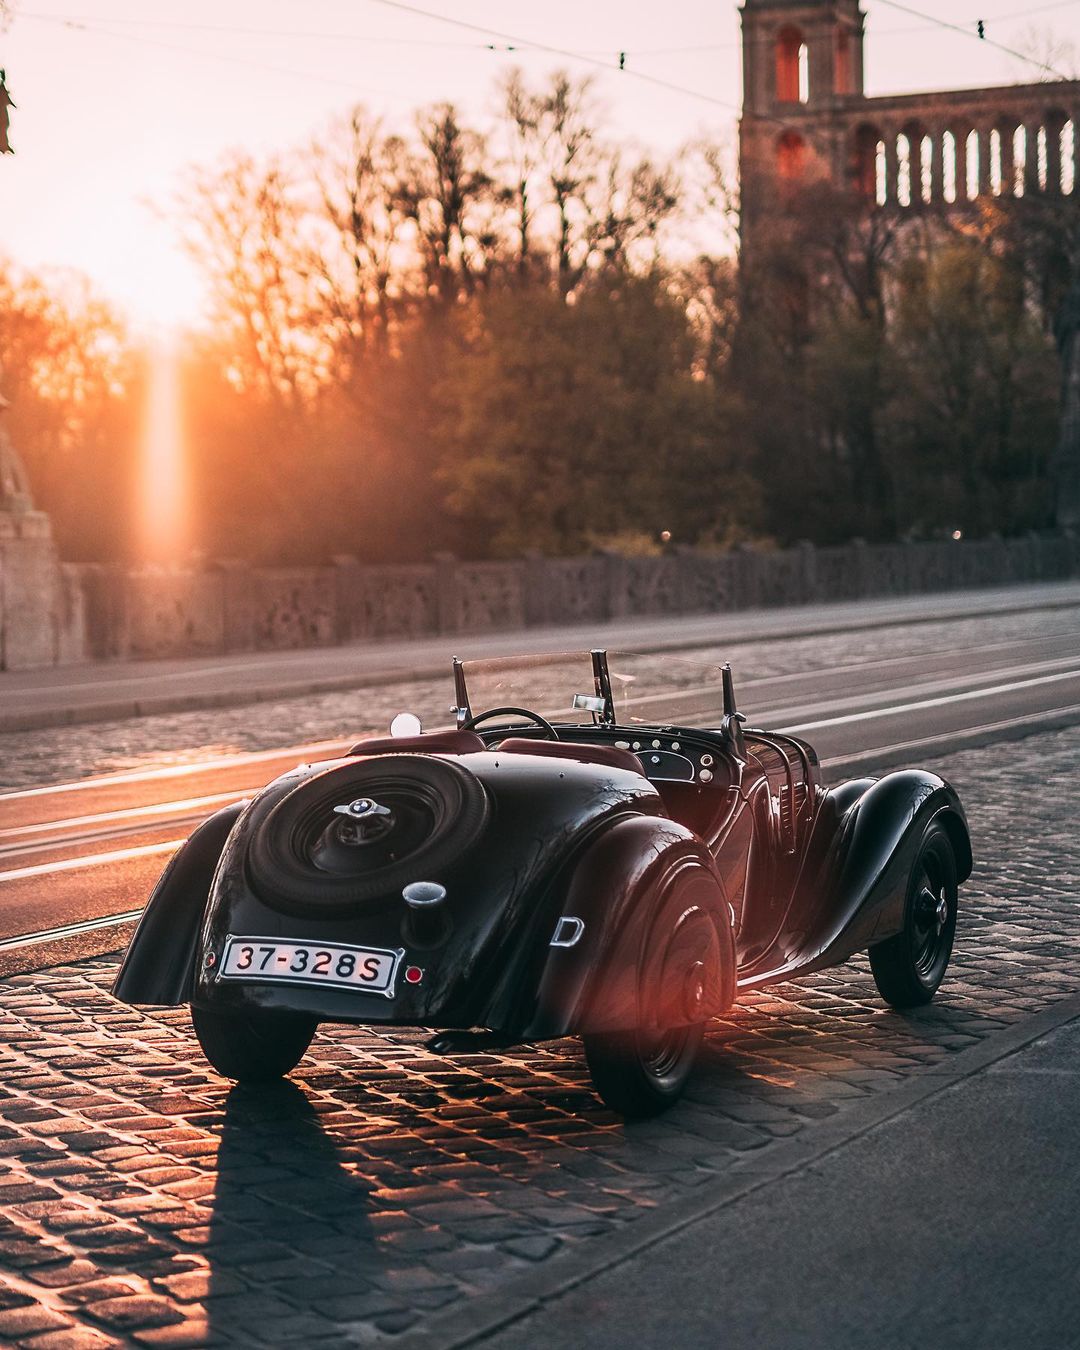 BMW antiguo en las calles de Munich